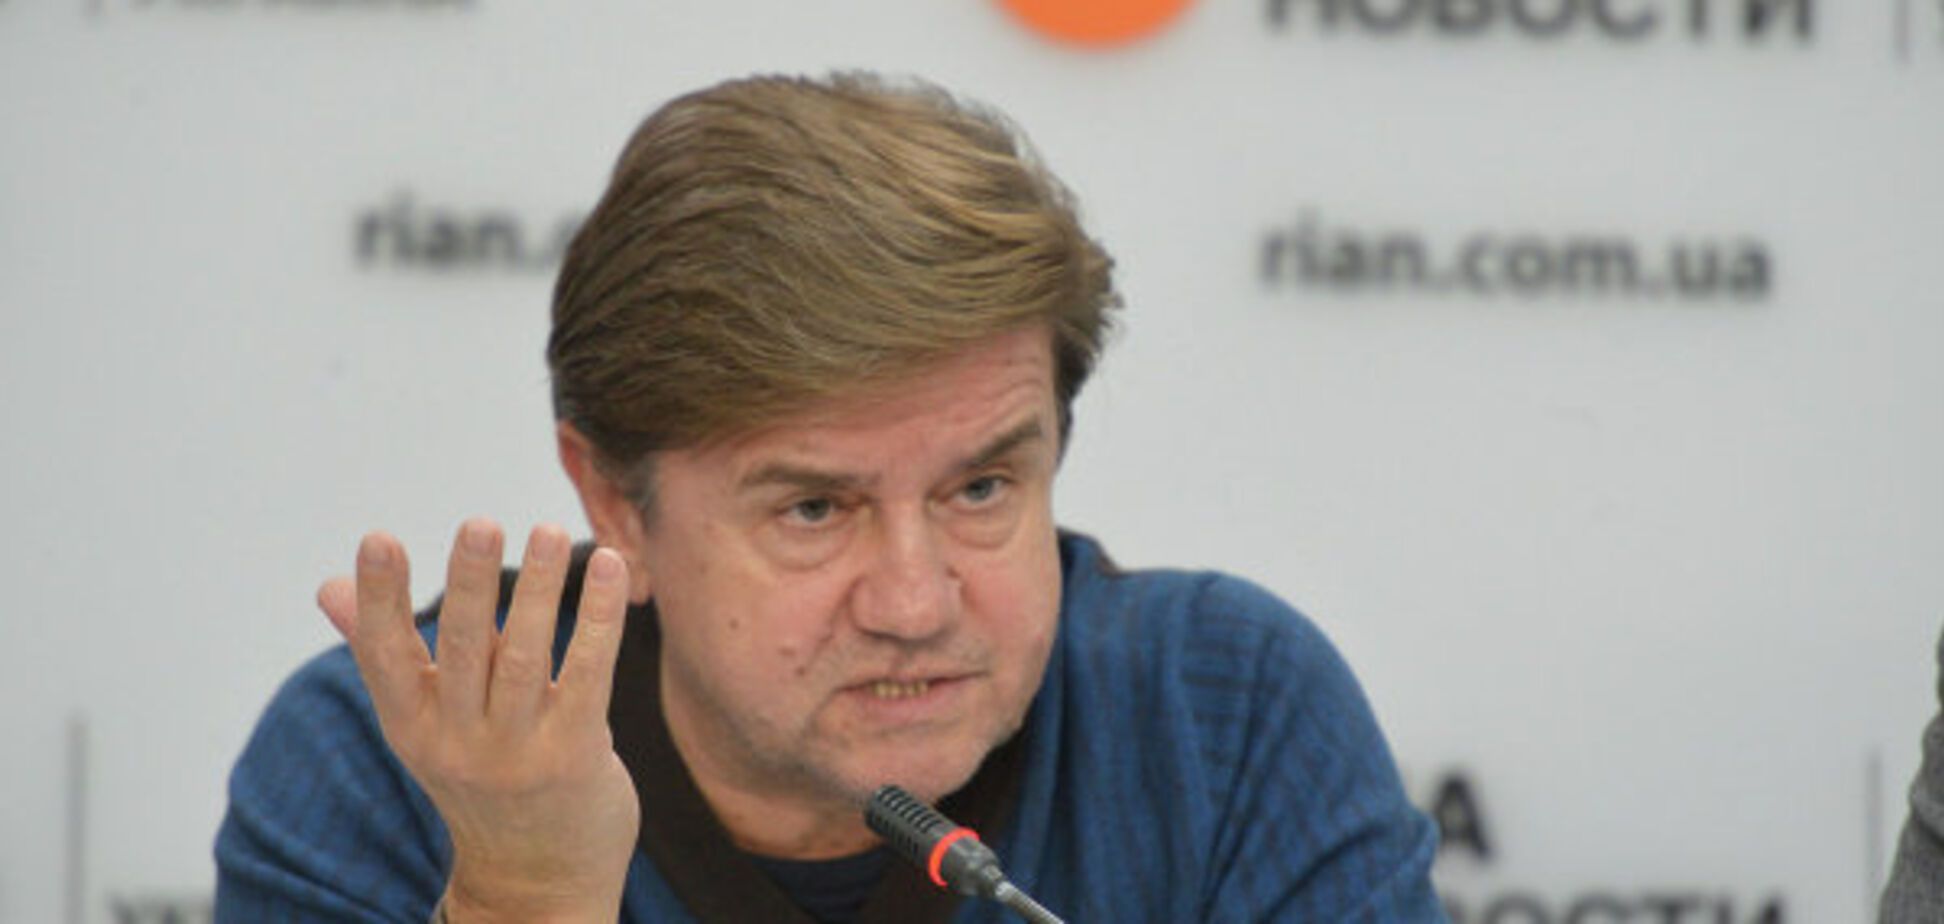 Сенкевич толком ничего не сделал для Николаева - Карасев объяснил отставку экс-мэра 